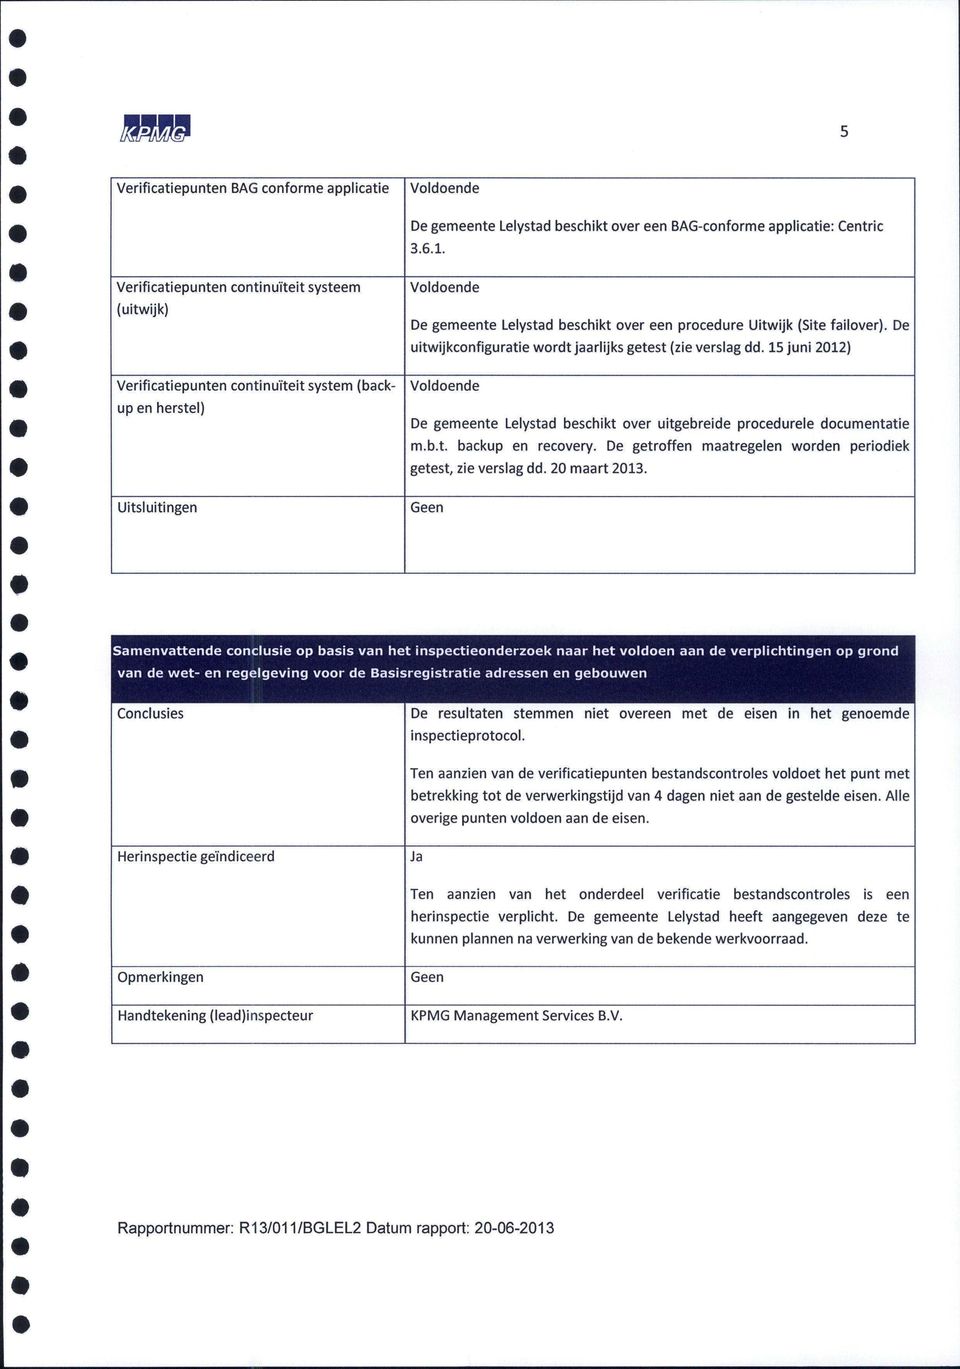 failover). De uitwijkconfiguratie wordt jaarlijks getest (zie verslag dd. 15 juni 2012) Voldoende De gemeente Lelystad beschikt over uitgebreide procedurele documentatie m.b.t. backup en recovery.